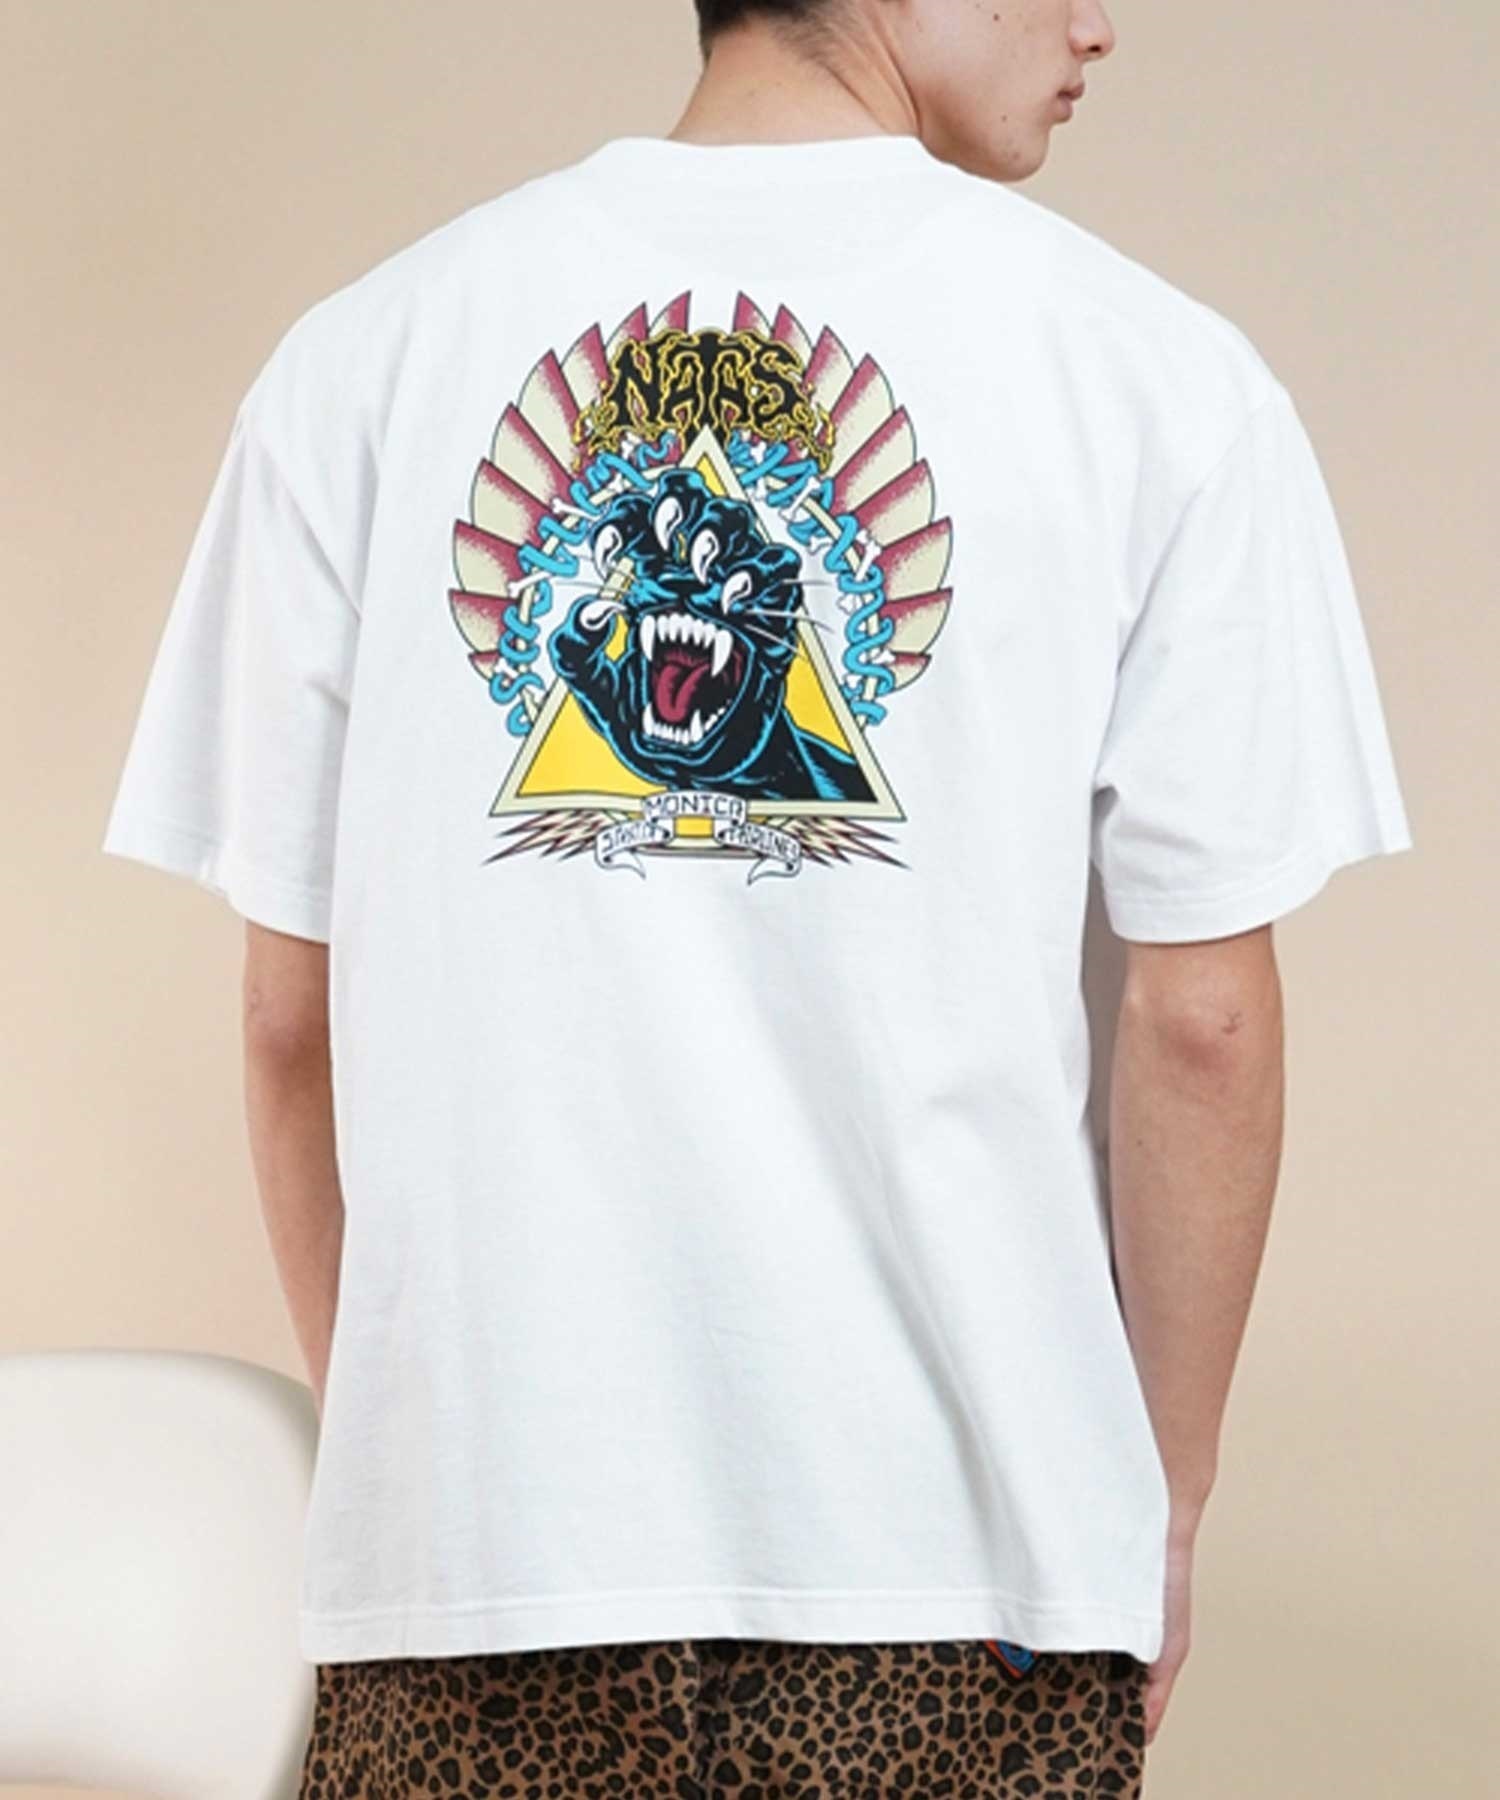 【マトメガイ対象】SANTACRUZ サンタクルーズ Natas Screaming Panther S S Tee メンズ 半袖 Tシャツ 502241414 ムラサキスポーツ限定(WHITE-M)